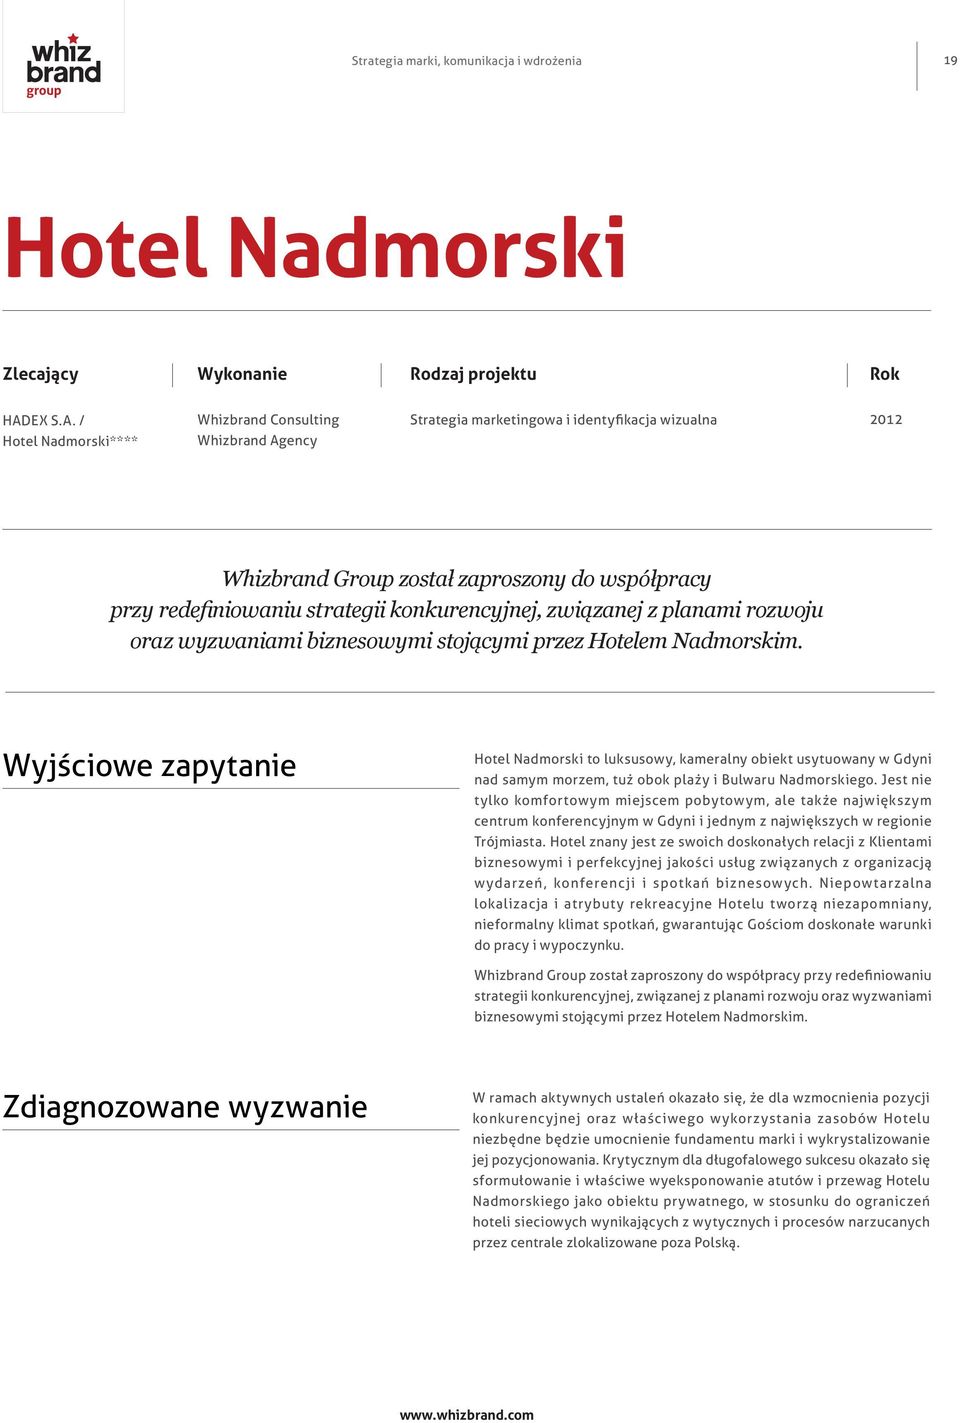 / Hotel Nadmorski**** Whizbrand Consulting Whizbrand Agency Strategia marketingowa i identyfikacja wizualna 2012 Whizbrand Group został zaproszony do współpracy przy redefiniowaniu strategii